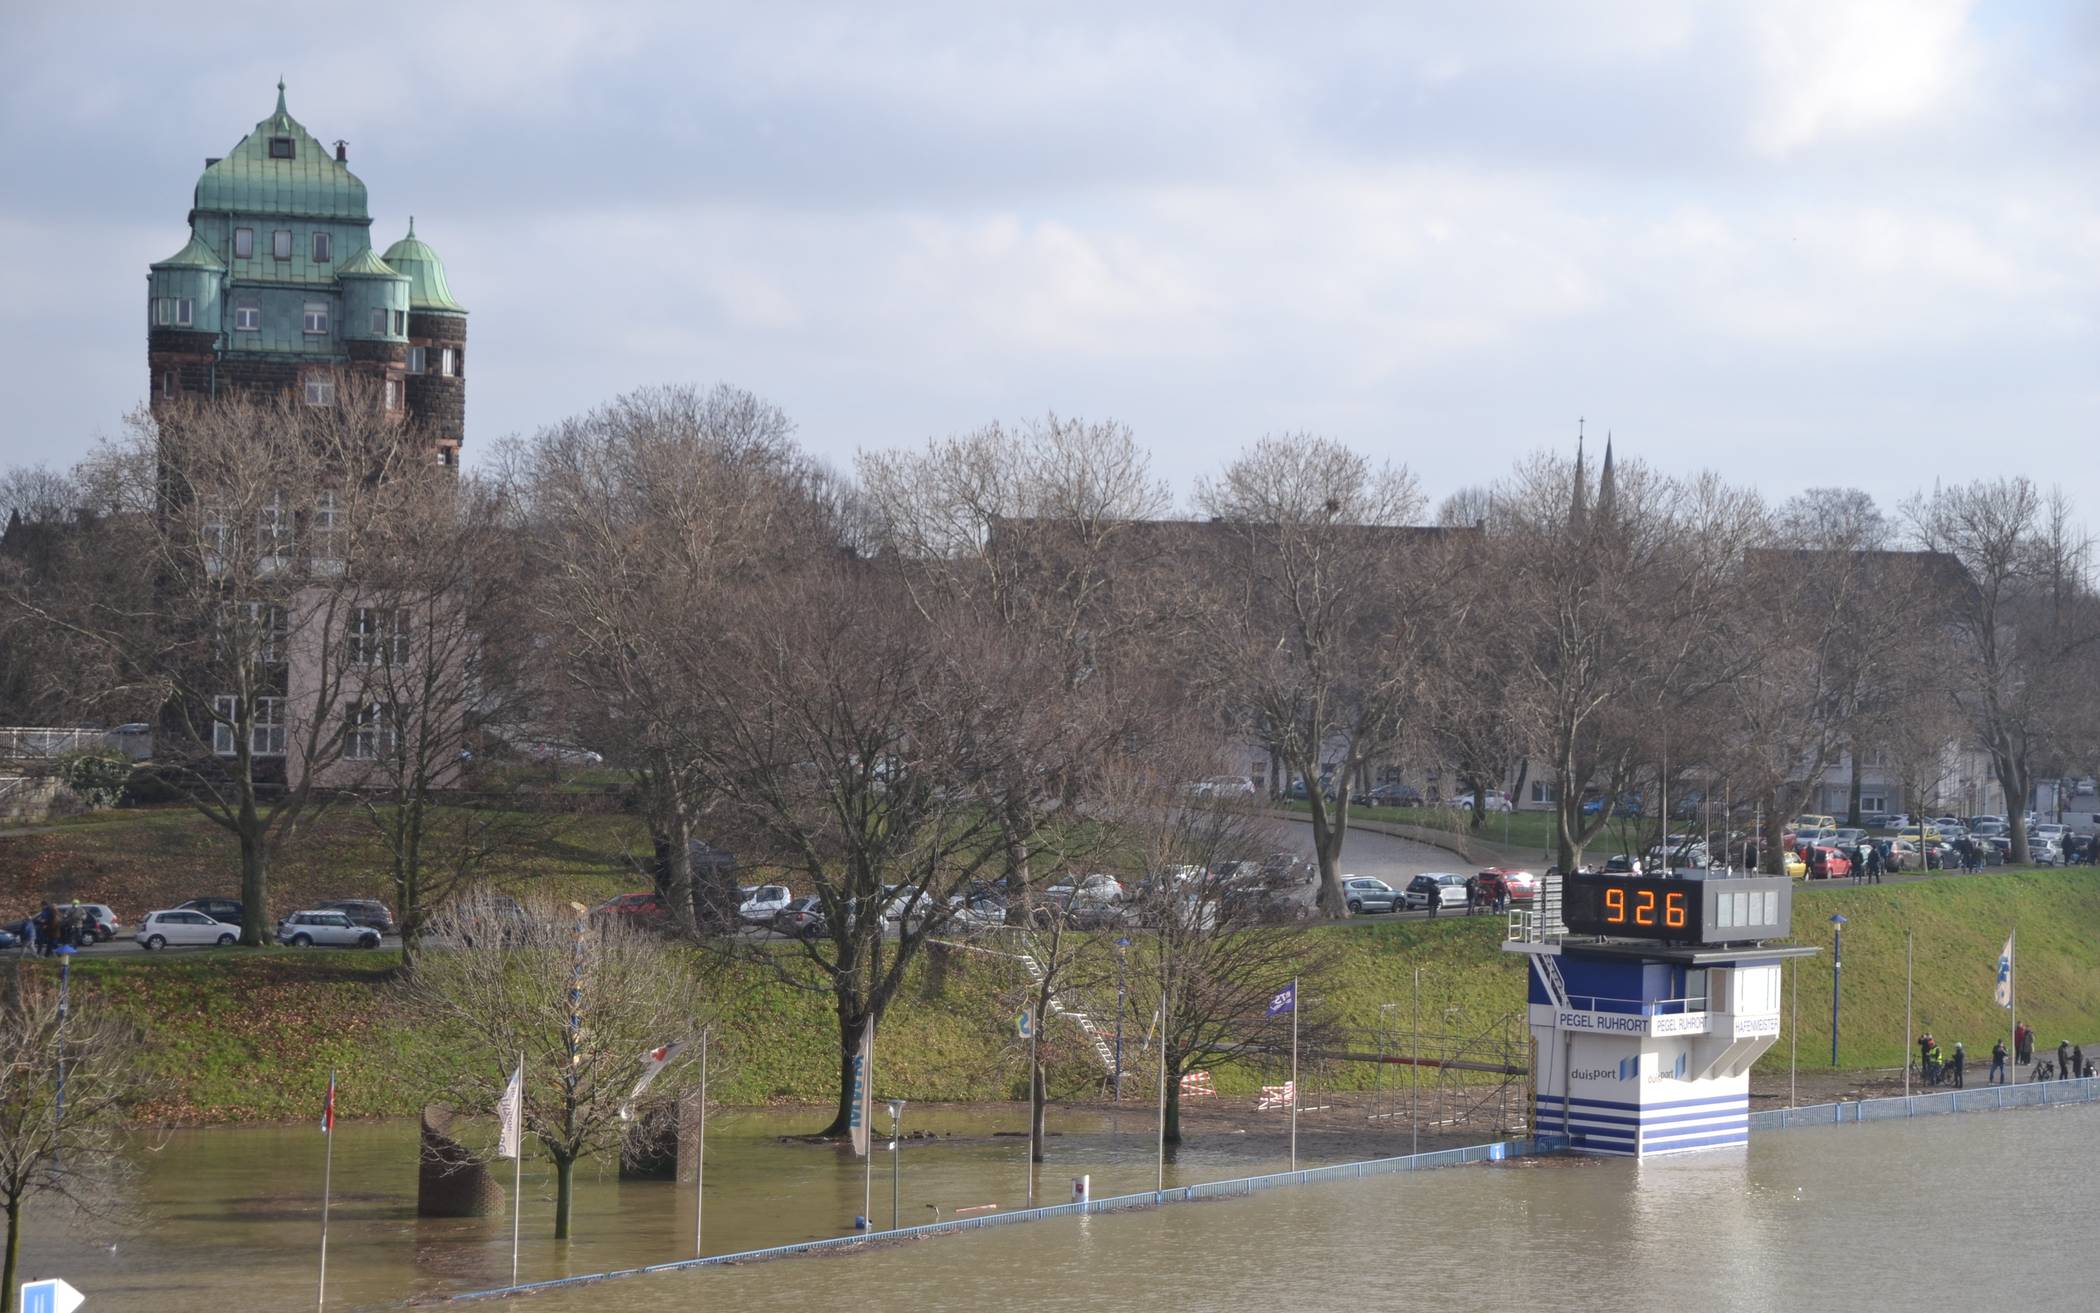 Mühlenweide überschwemmt - Rheinhochwasser lockt Touristen an